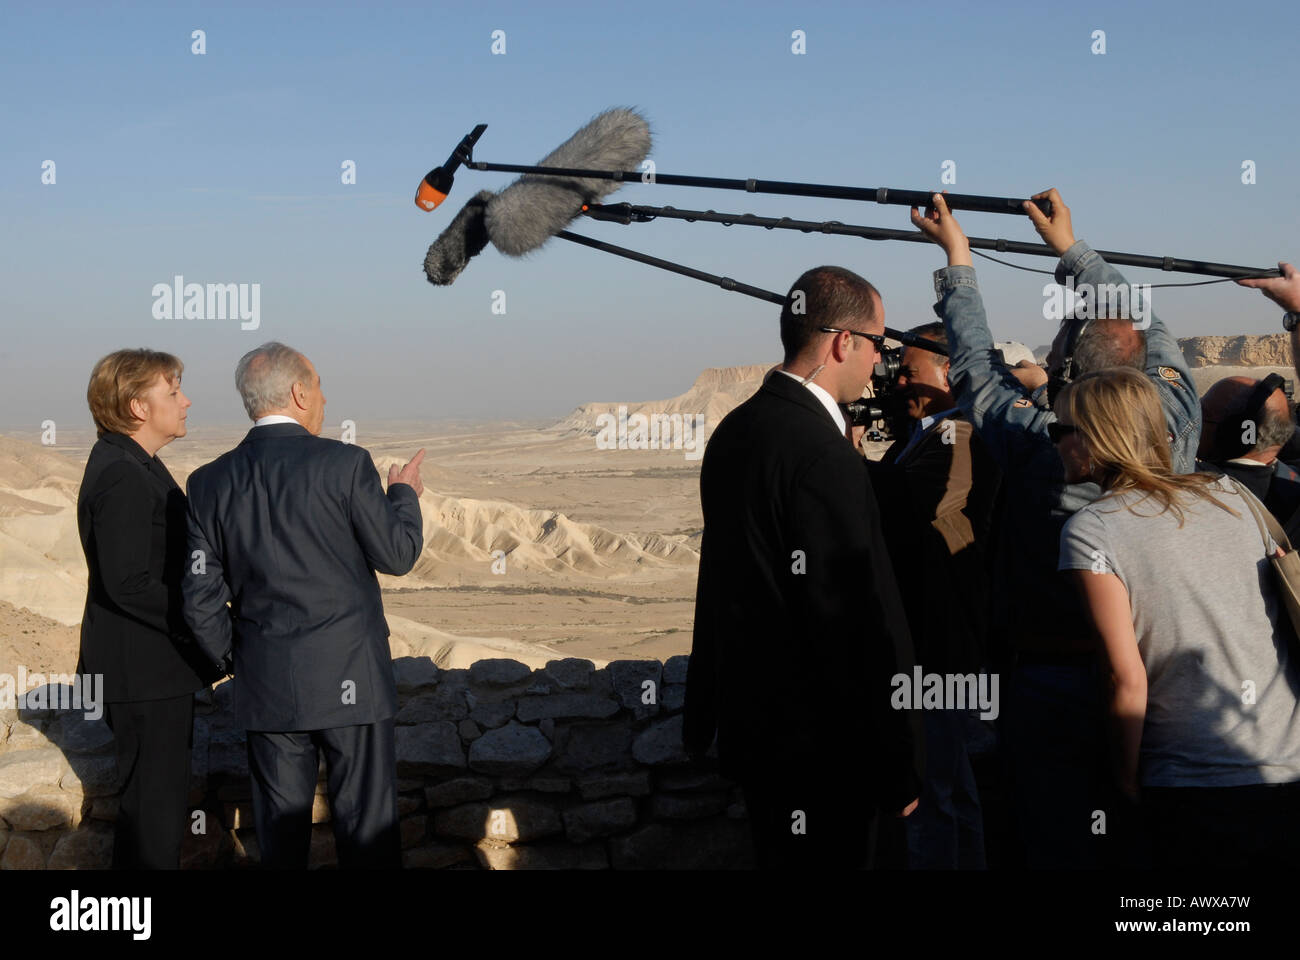 Los reporteros intentando grabar la conversación de la canciller alemana Angela Merkel con el presidente israelí, Shimon Peres, en Sde Boker en el desierto de Negev, Israel Foto de stock